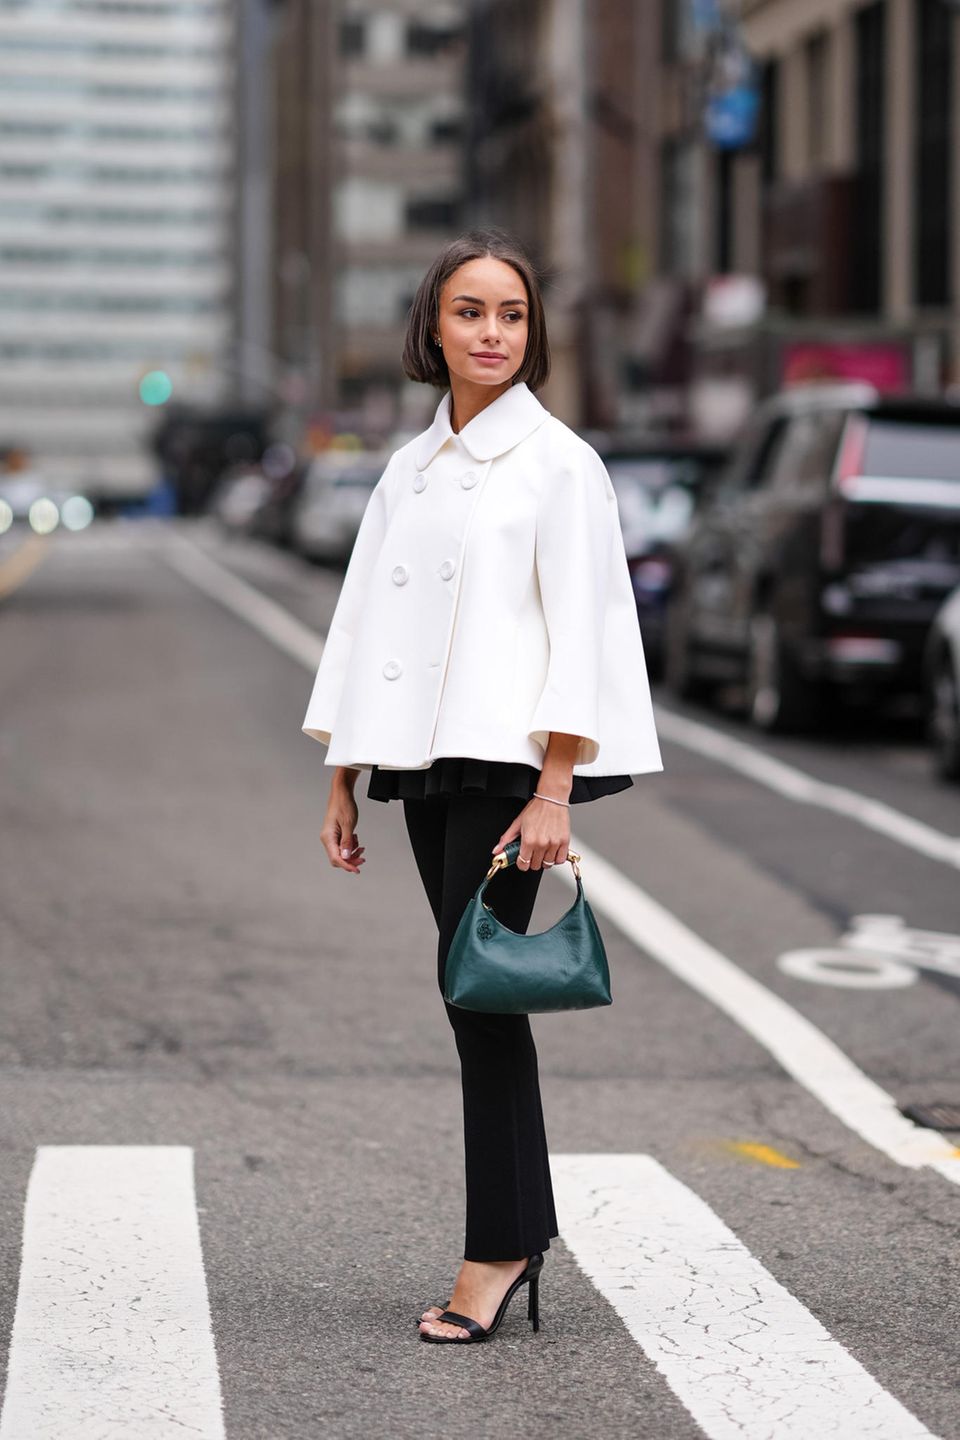 Dieser Gast präsentiert sich vor den Modenschauen in New York in einer eleganten, ausgestellten, weißen Jacke. Dazu trägt sie eine schmale Straight-Leg-Hose, Riemchensandaletten und eine grüne Tasche. 